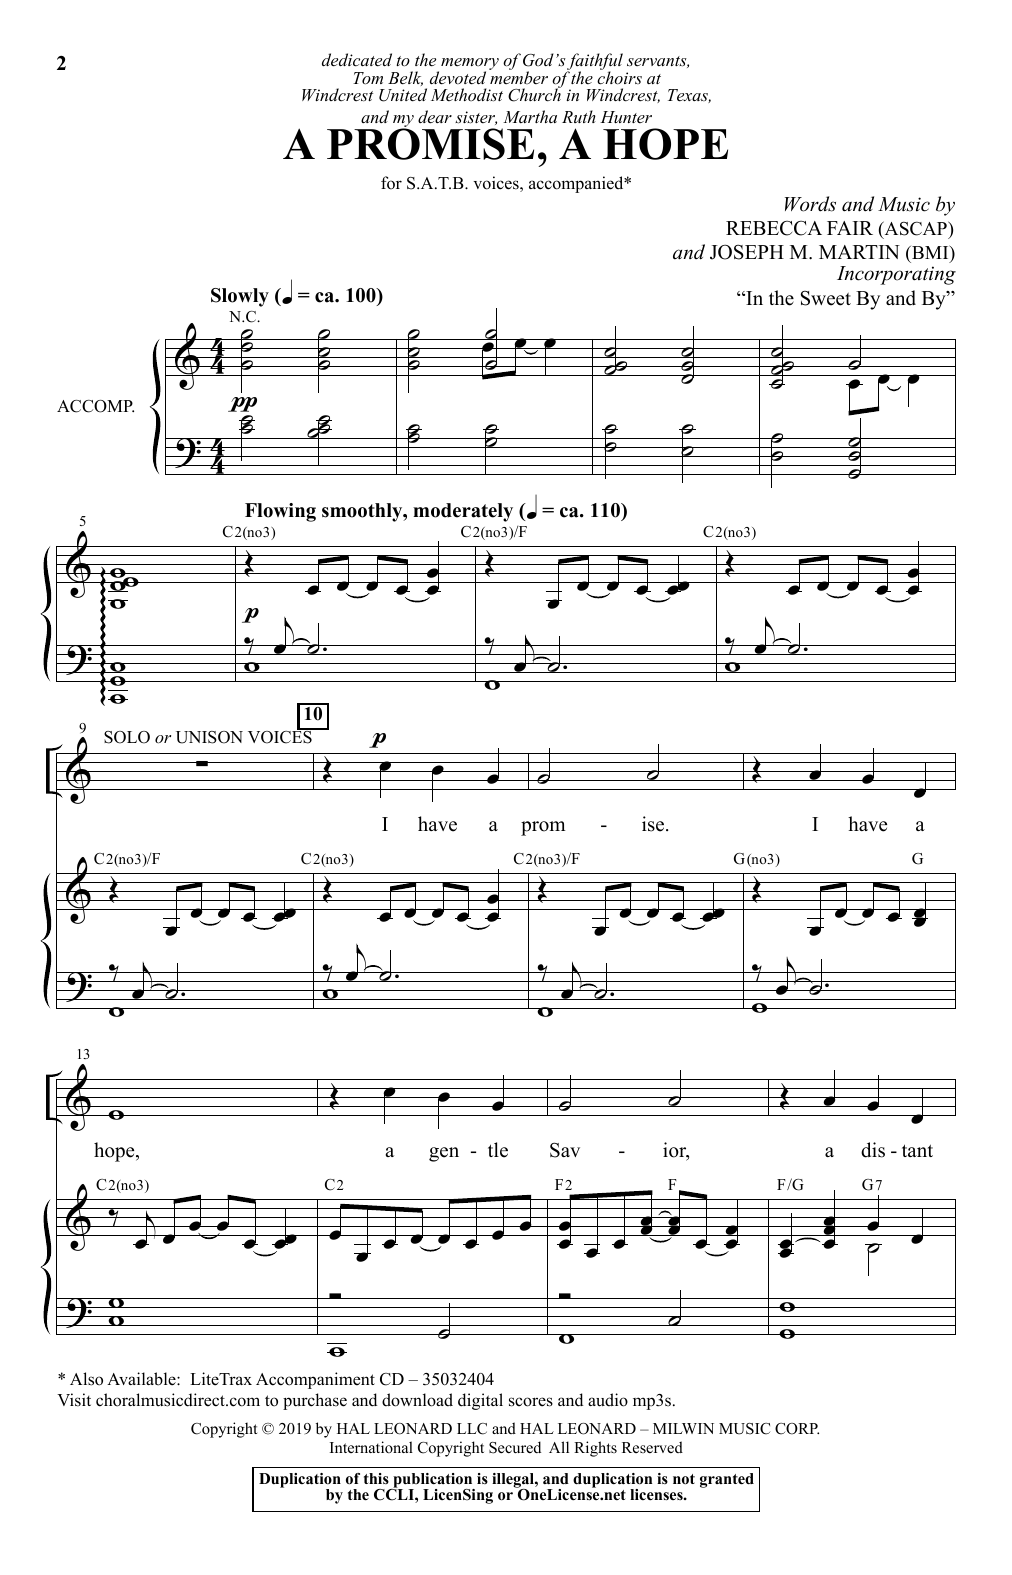 Rebecca Fair & Joseph M. Martin A Promise, A Hope Sheet Music Notes & Chords for SATB Choir - Download or Print PDF